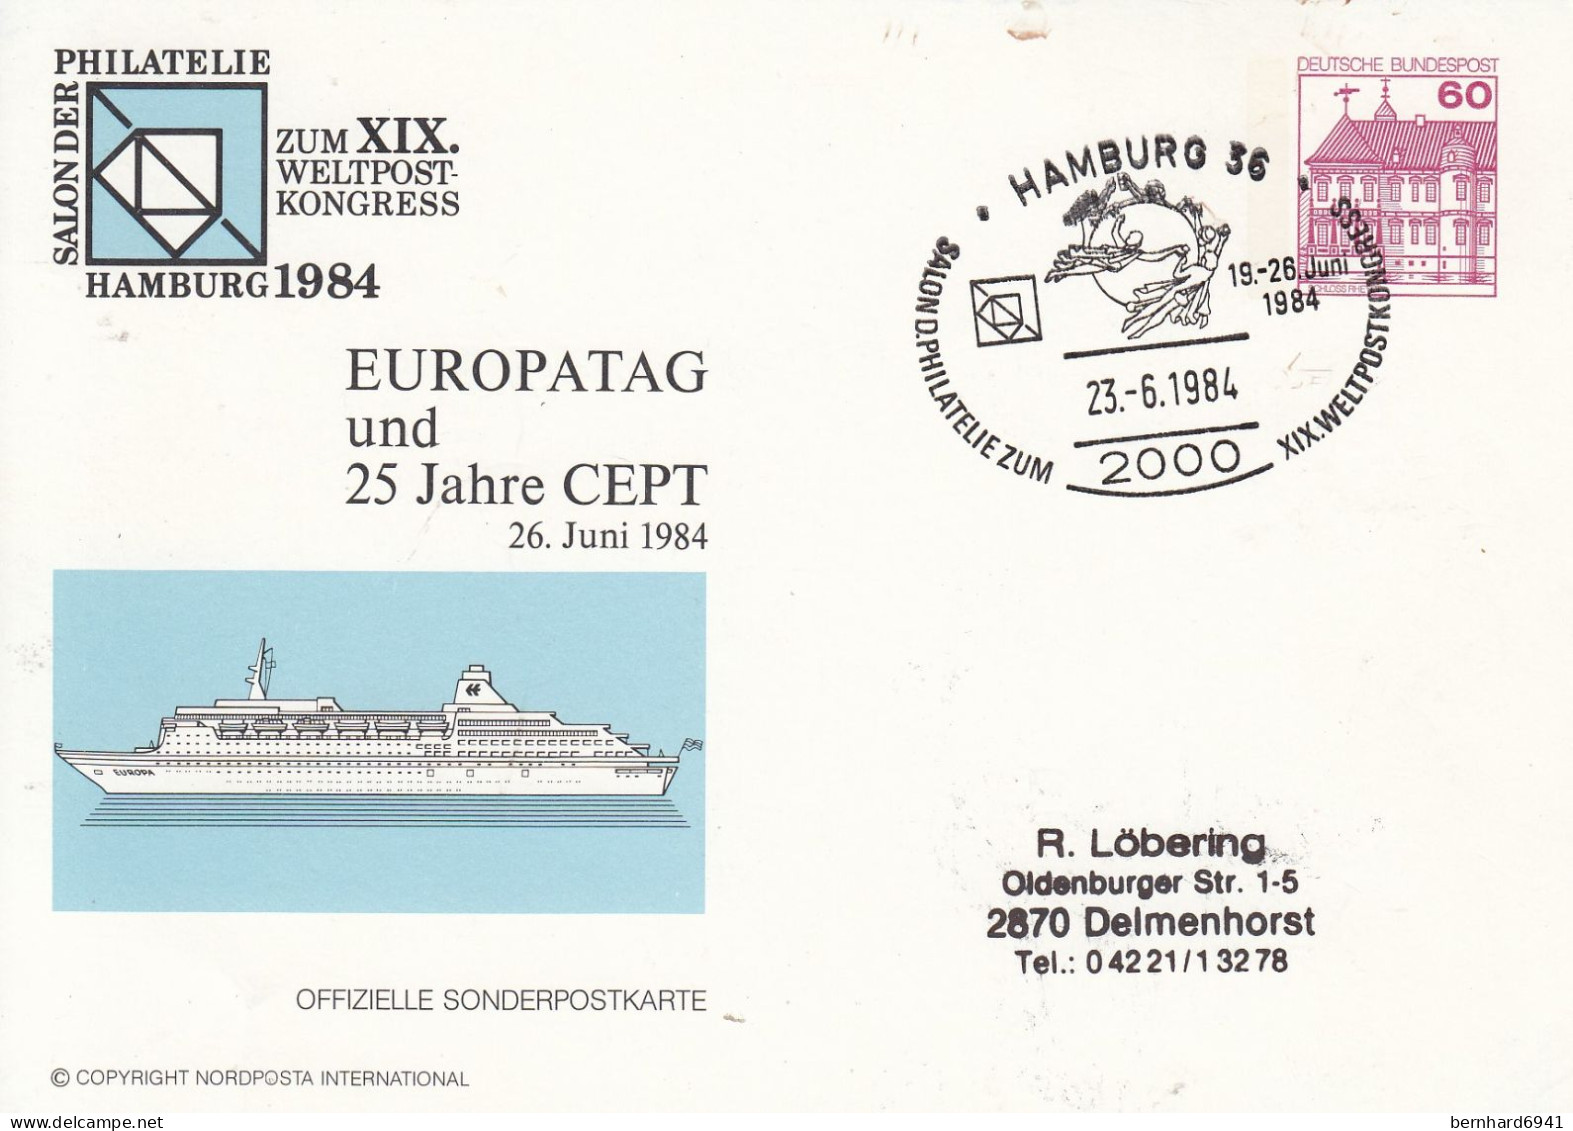 PP 106/143aSalon Der Philatelie Hamburg 1984 - EUROPATAG Und 25 Jahre CEPT, Hamburg 36 - Privatpostkarten - Gebraucht